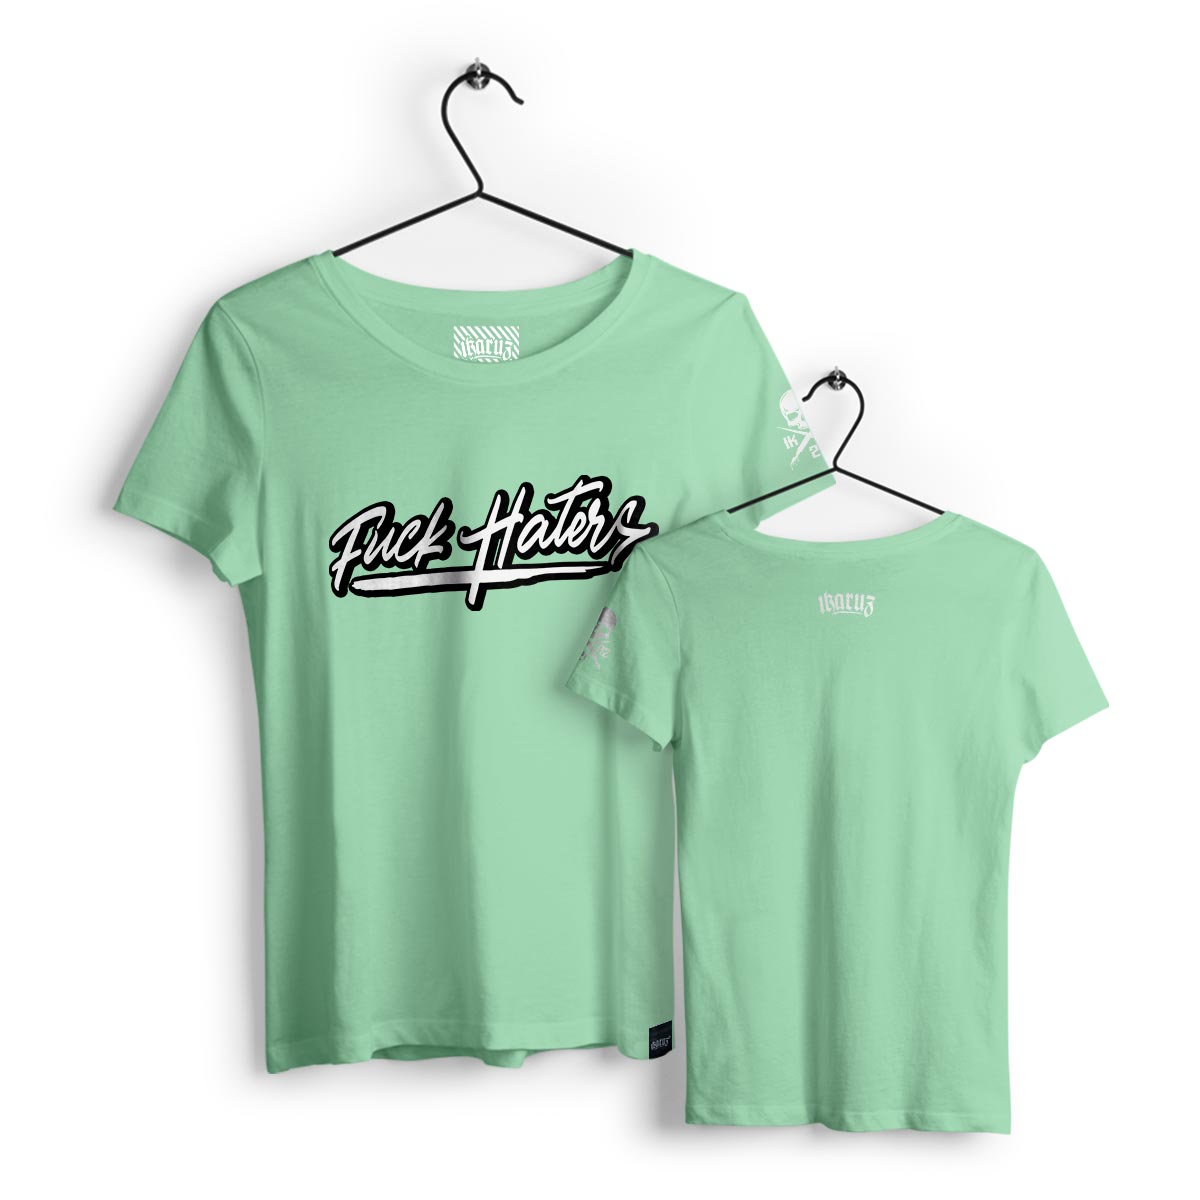 Ikrz | Haters | Women Mint Shirt - Ikaruz